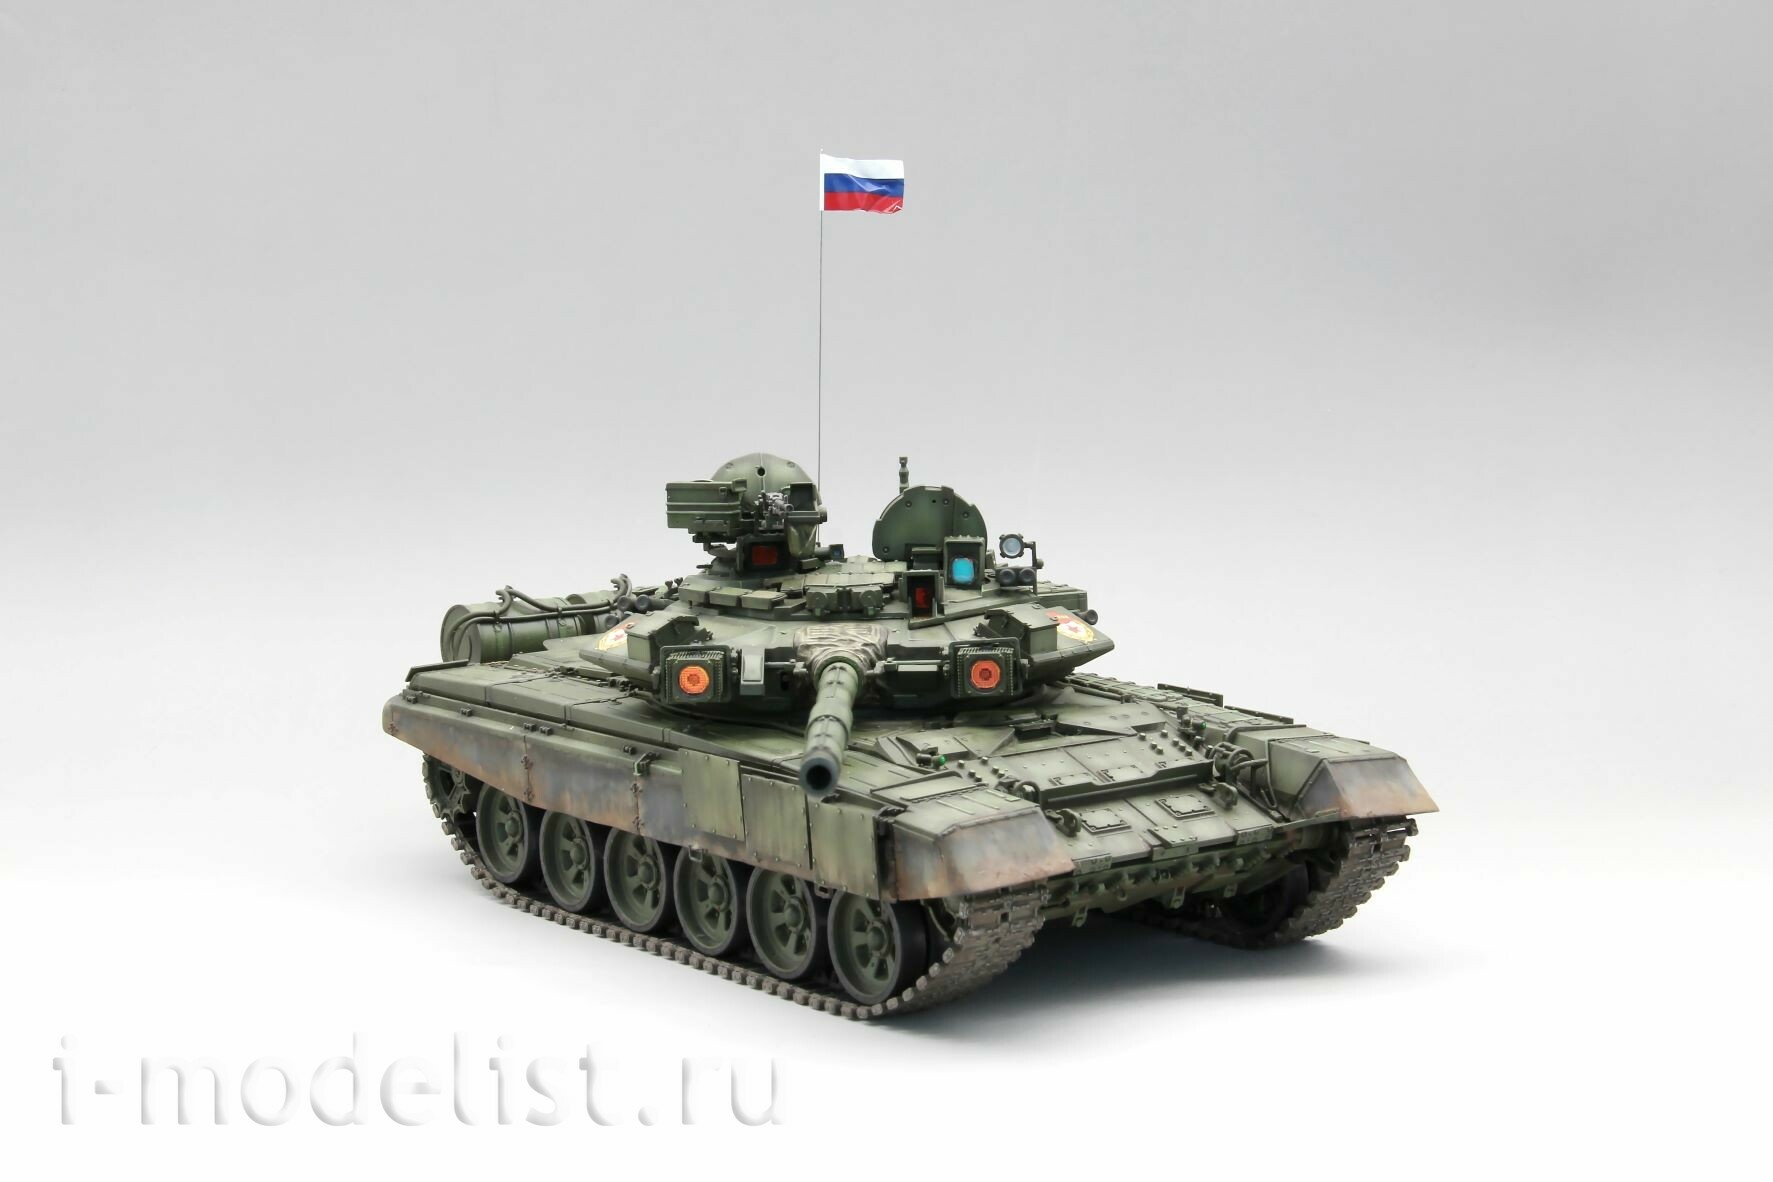 35A050 Amusing Hobby 1/35 Российский танк девяностый с полным интерьером